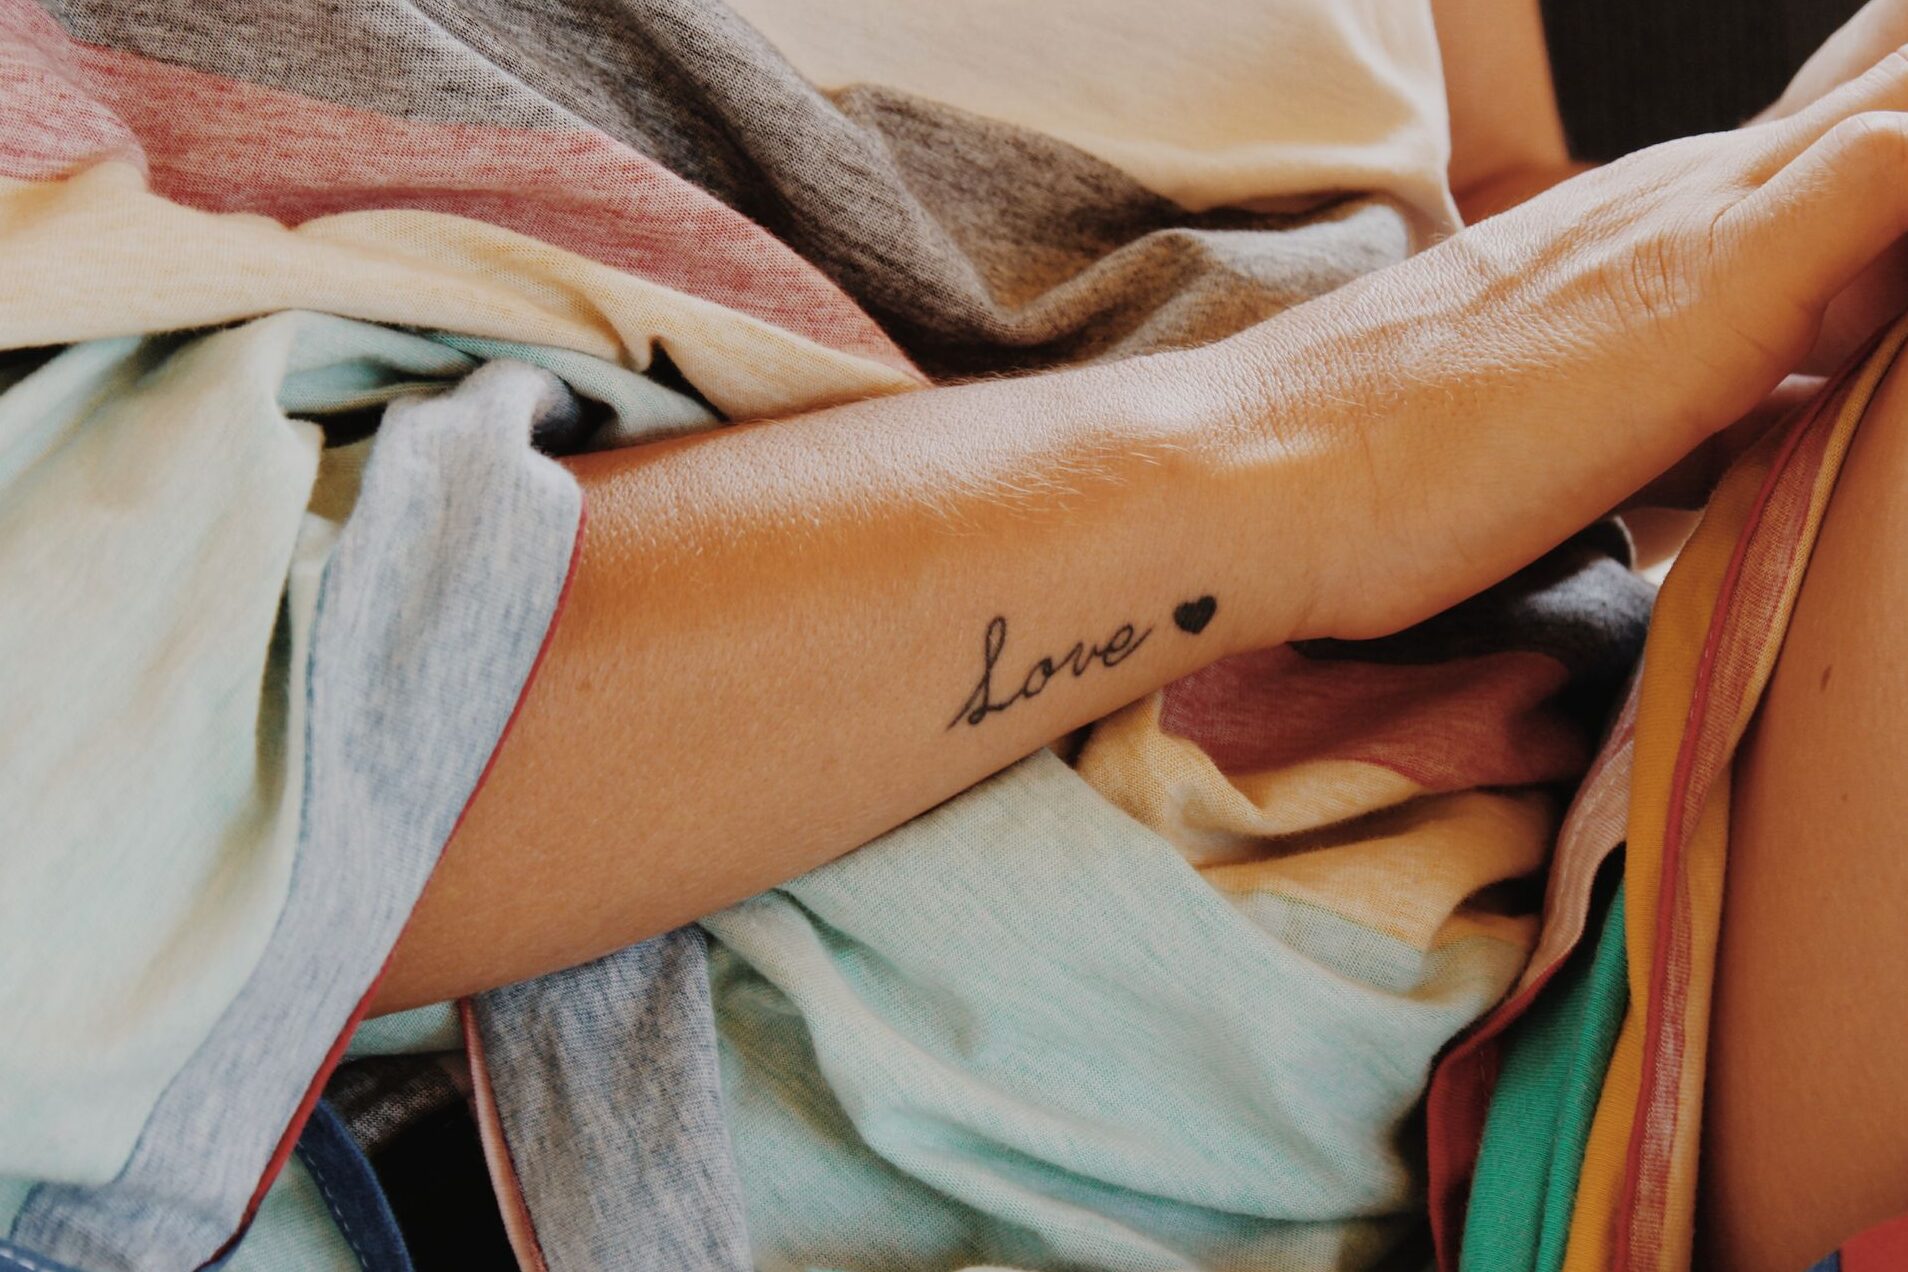 Significado y tendencias del tatuaje de palabras en mujeres